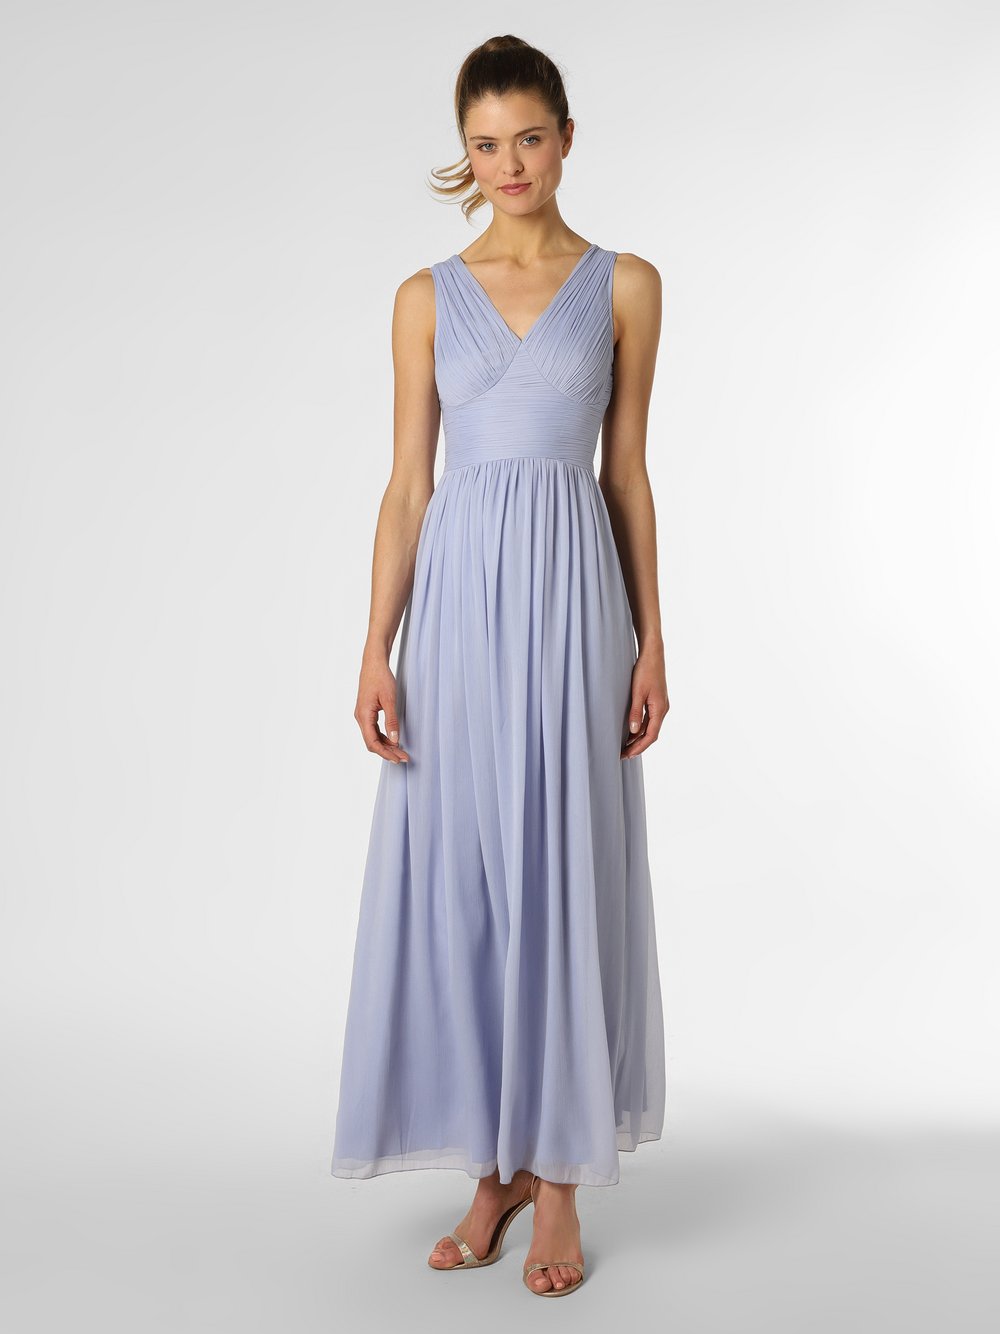 Lipsy - Damska sukienka wieczorowa, niebieski|lila